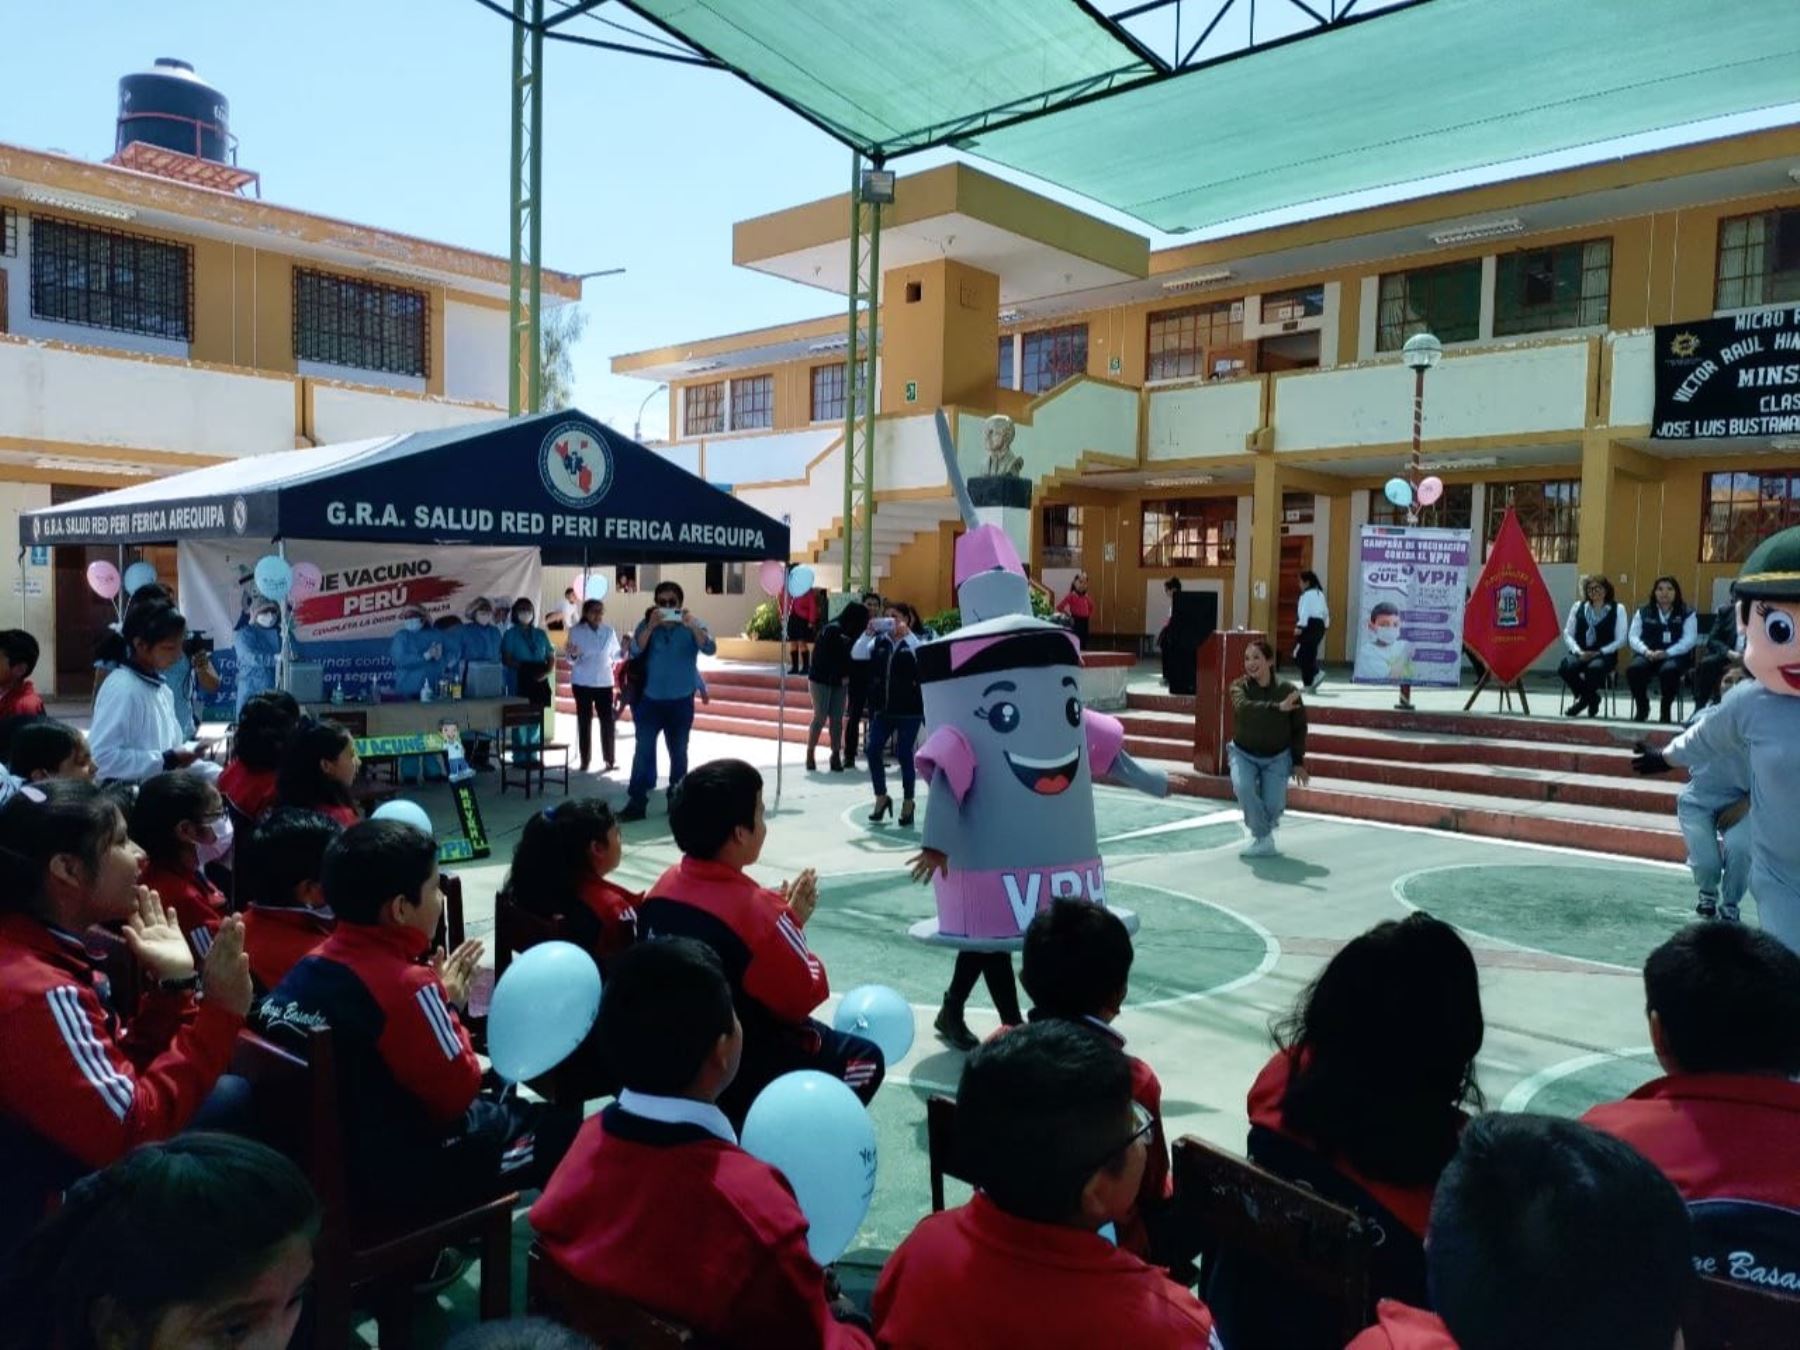 Gerencia Regional de Salud de Arequipa inició campaña para aplicar vacuna contra el virus del papiloma humano a más de 35,000 niños.